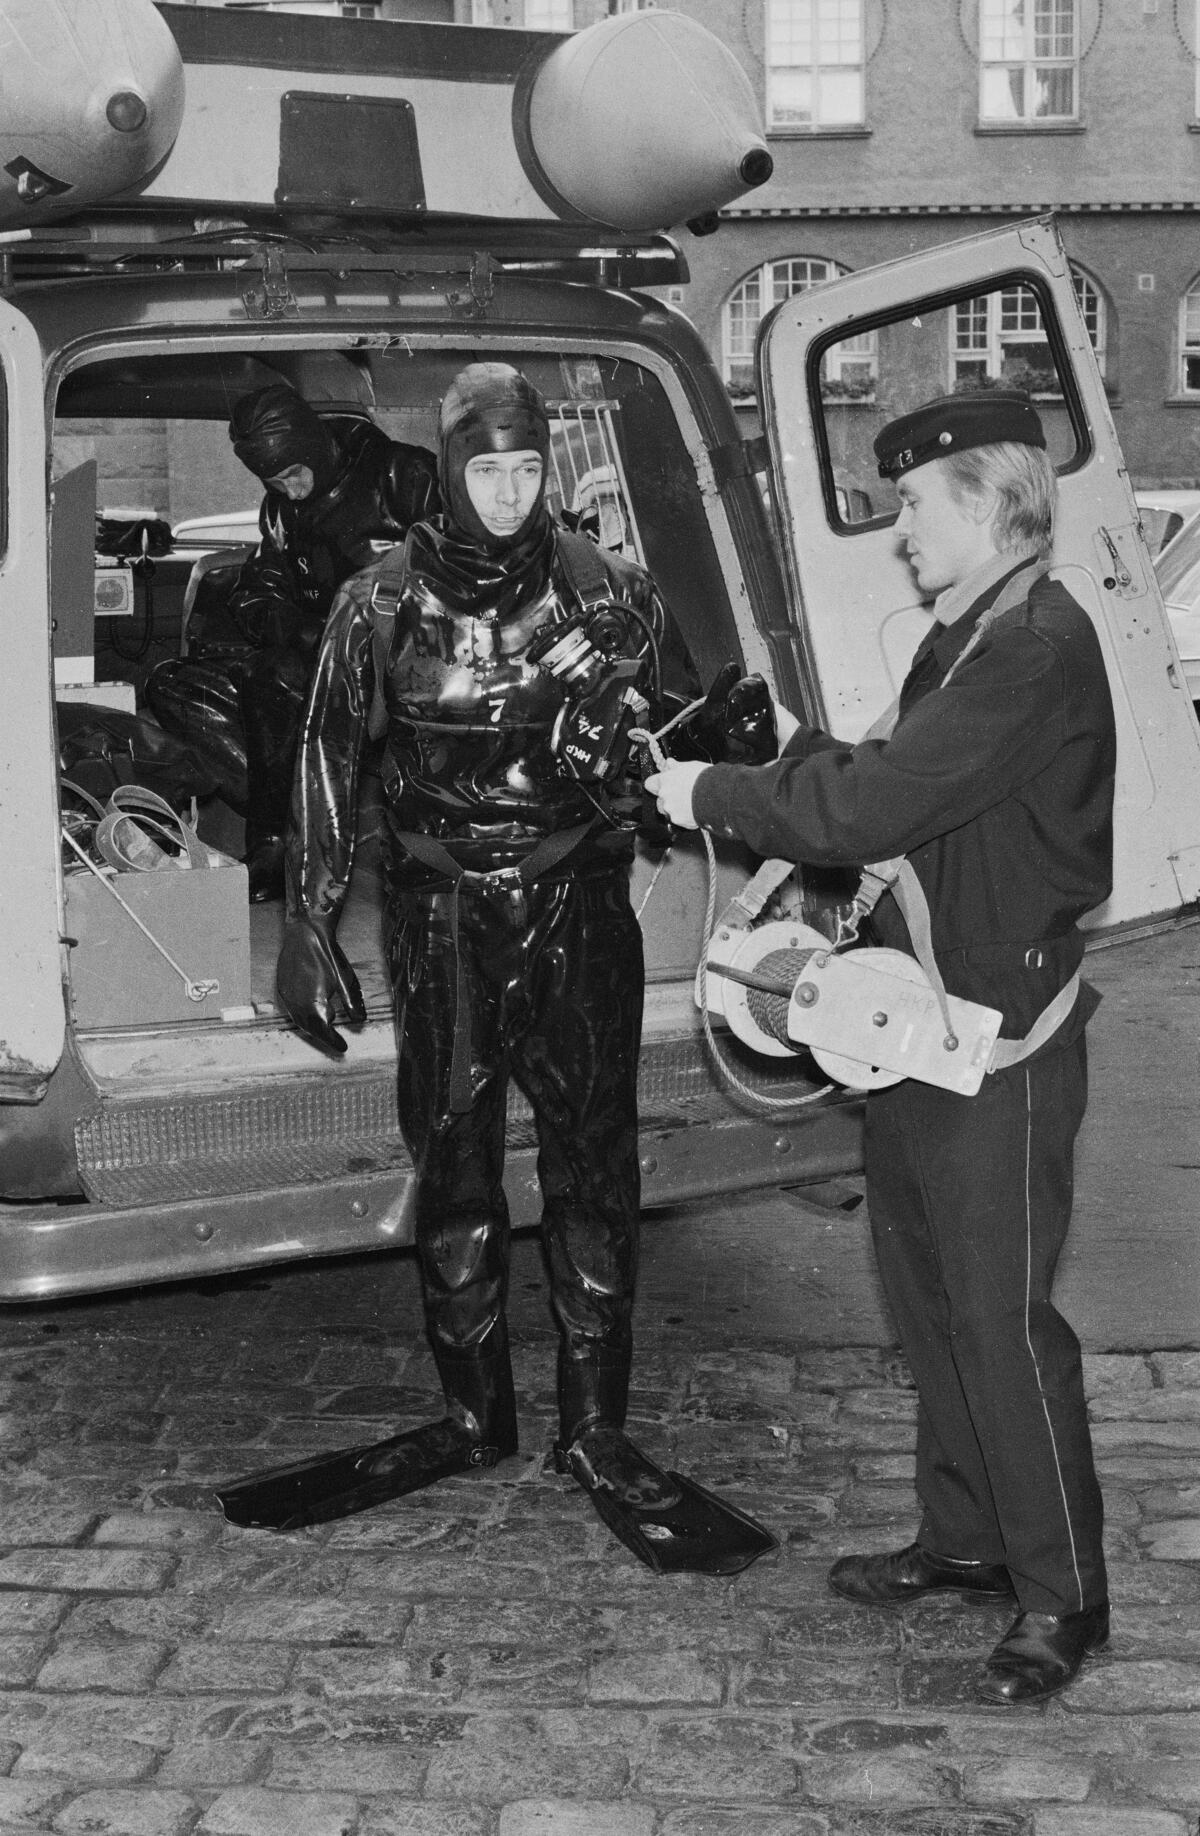 Pelastussukellustoiminta aloitettiin loppuvuodesta 1955. Kuvassa pelastussukeltajat, palomiehet Timo Huttunen ja Pauli Anttonen vuonna 1972.
 Kuvaaja: Palomuseo / Helsingin kaupungin pelastuslaitos